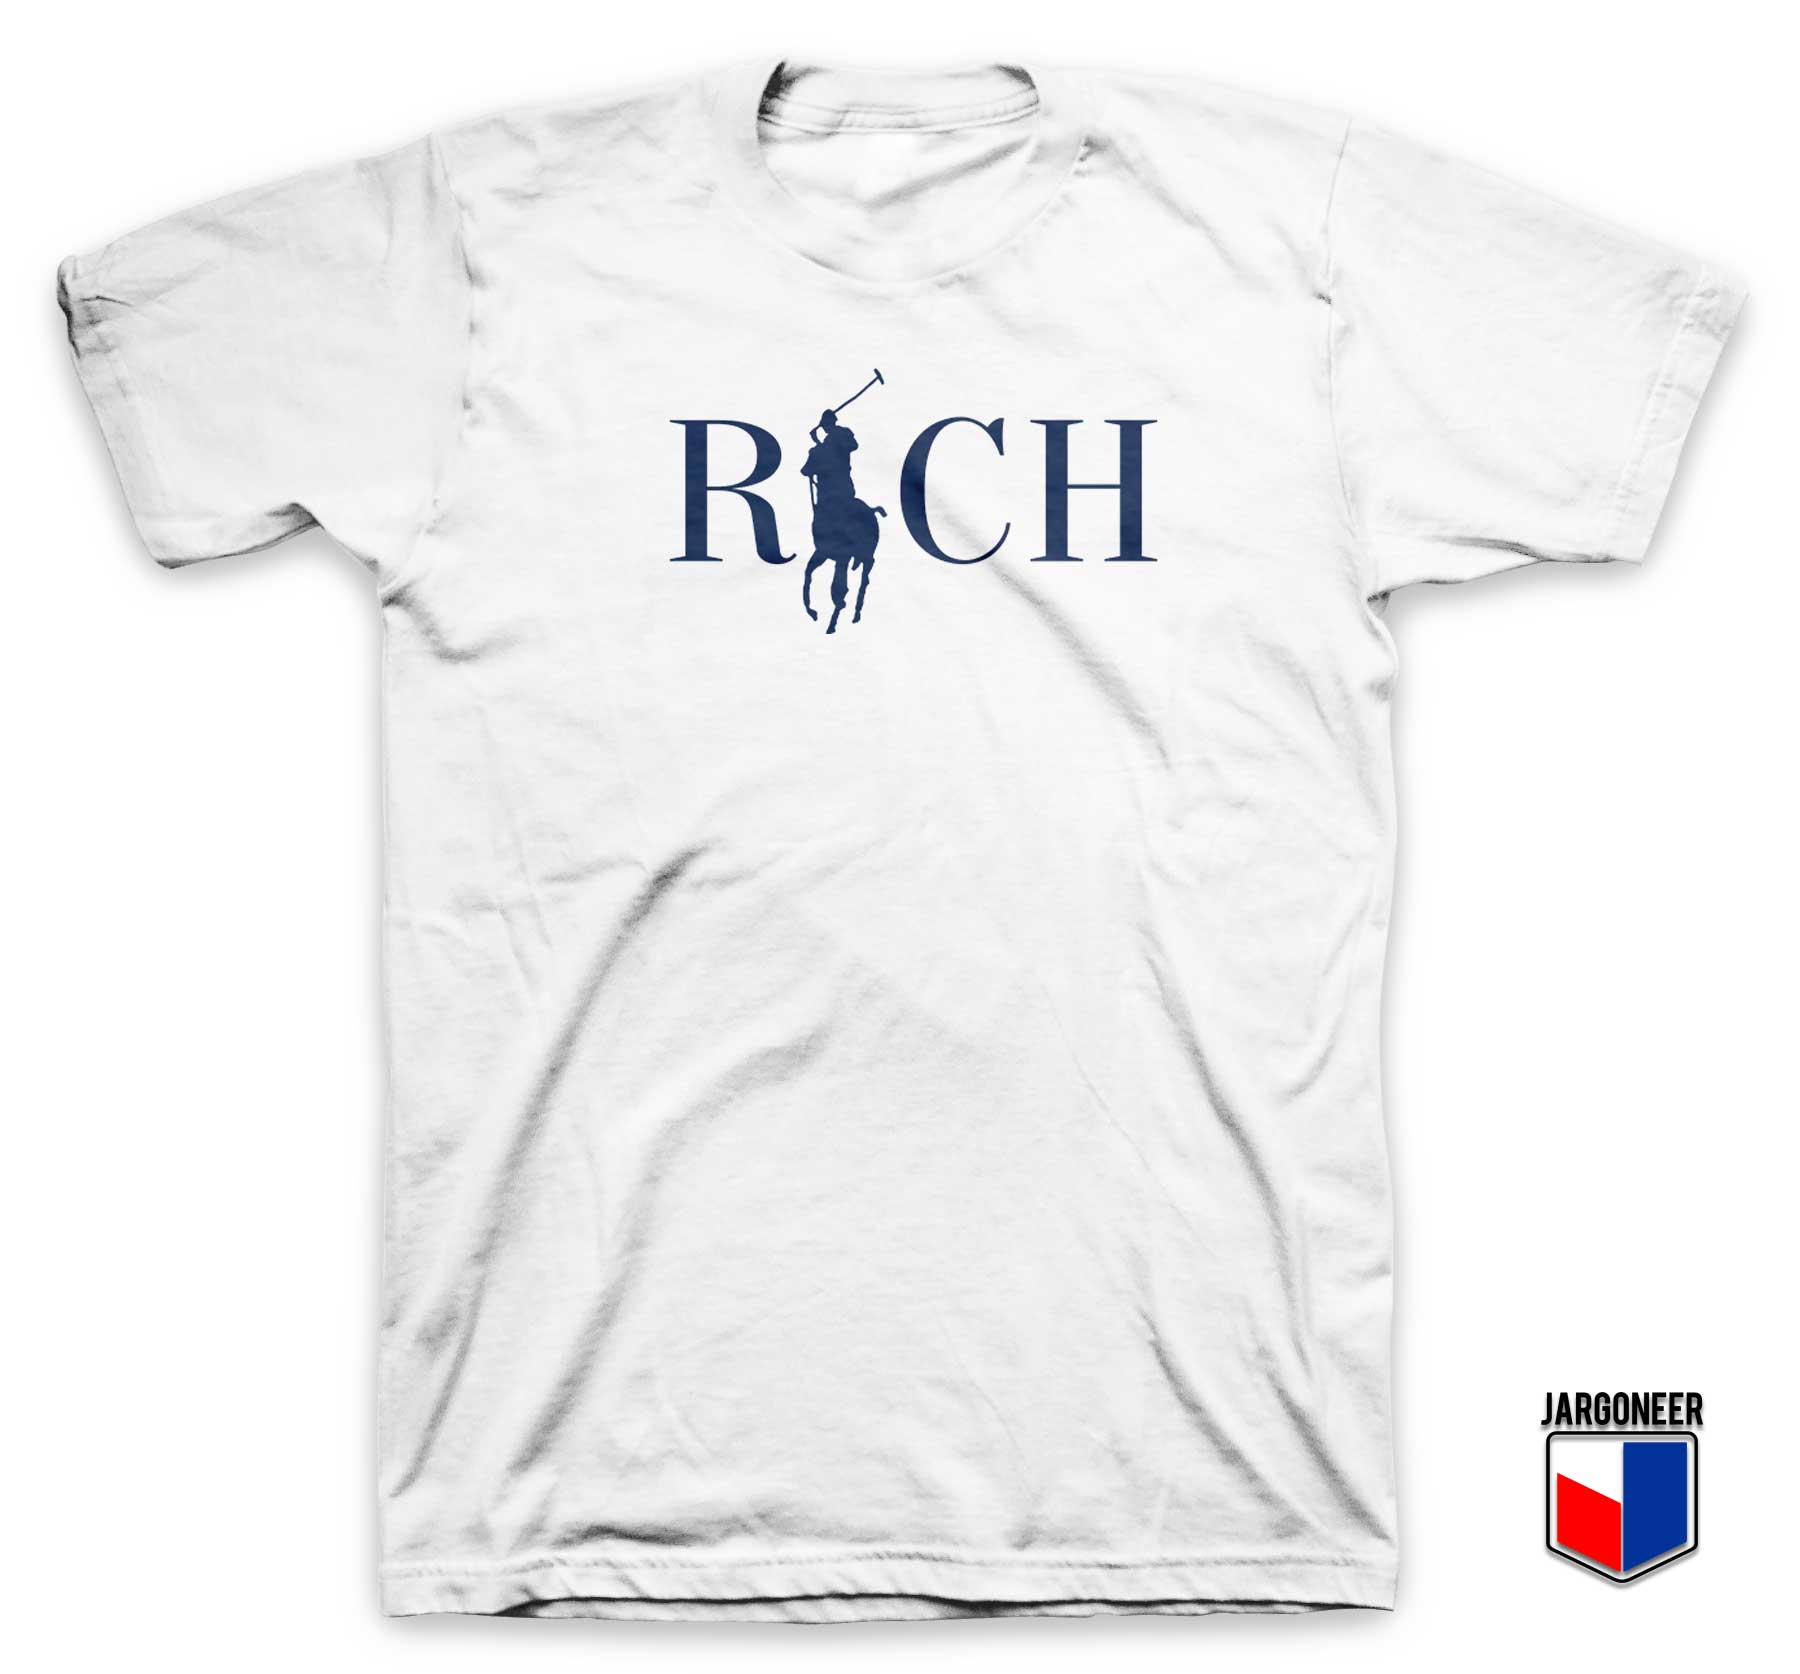 Rich Country Club T Shirt - Shop Unique Graphic Cool Shirt Designs